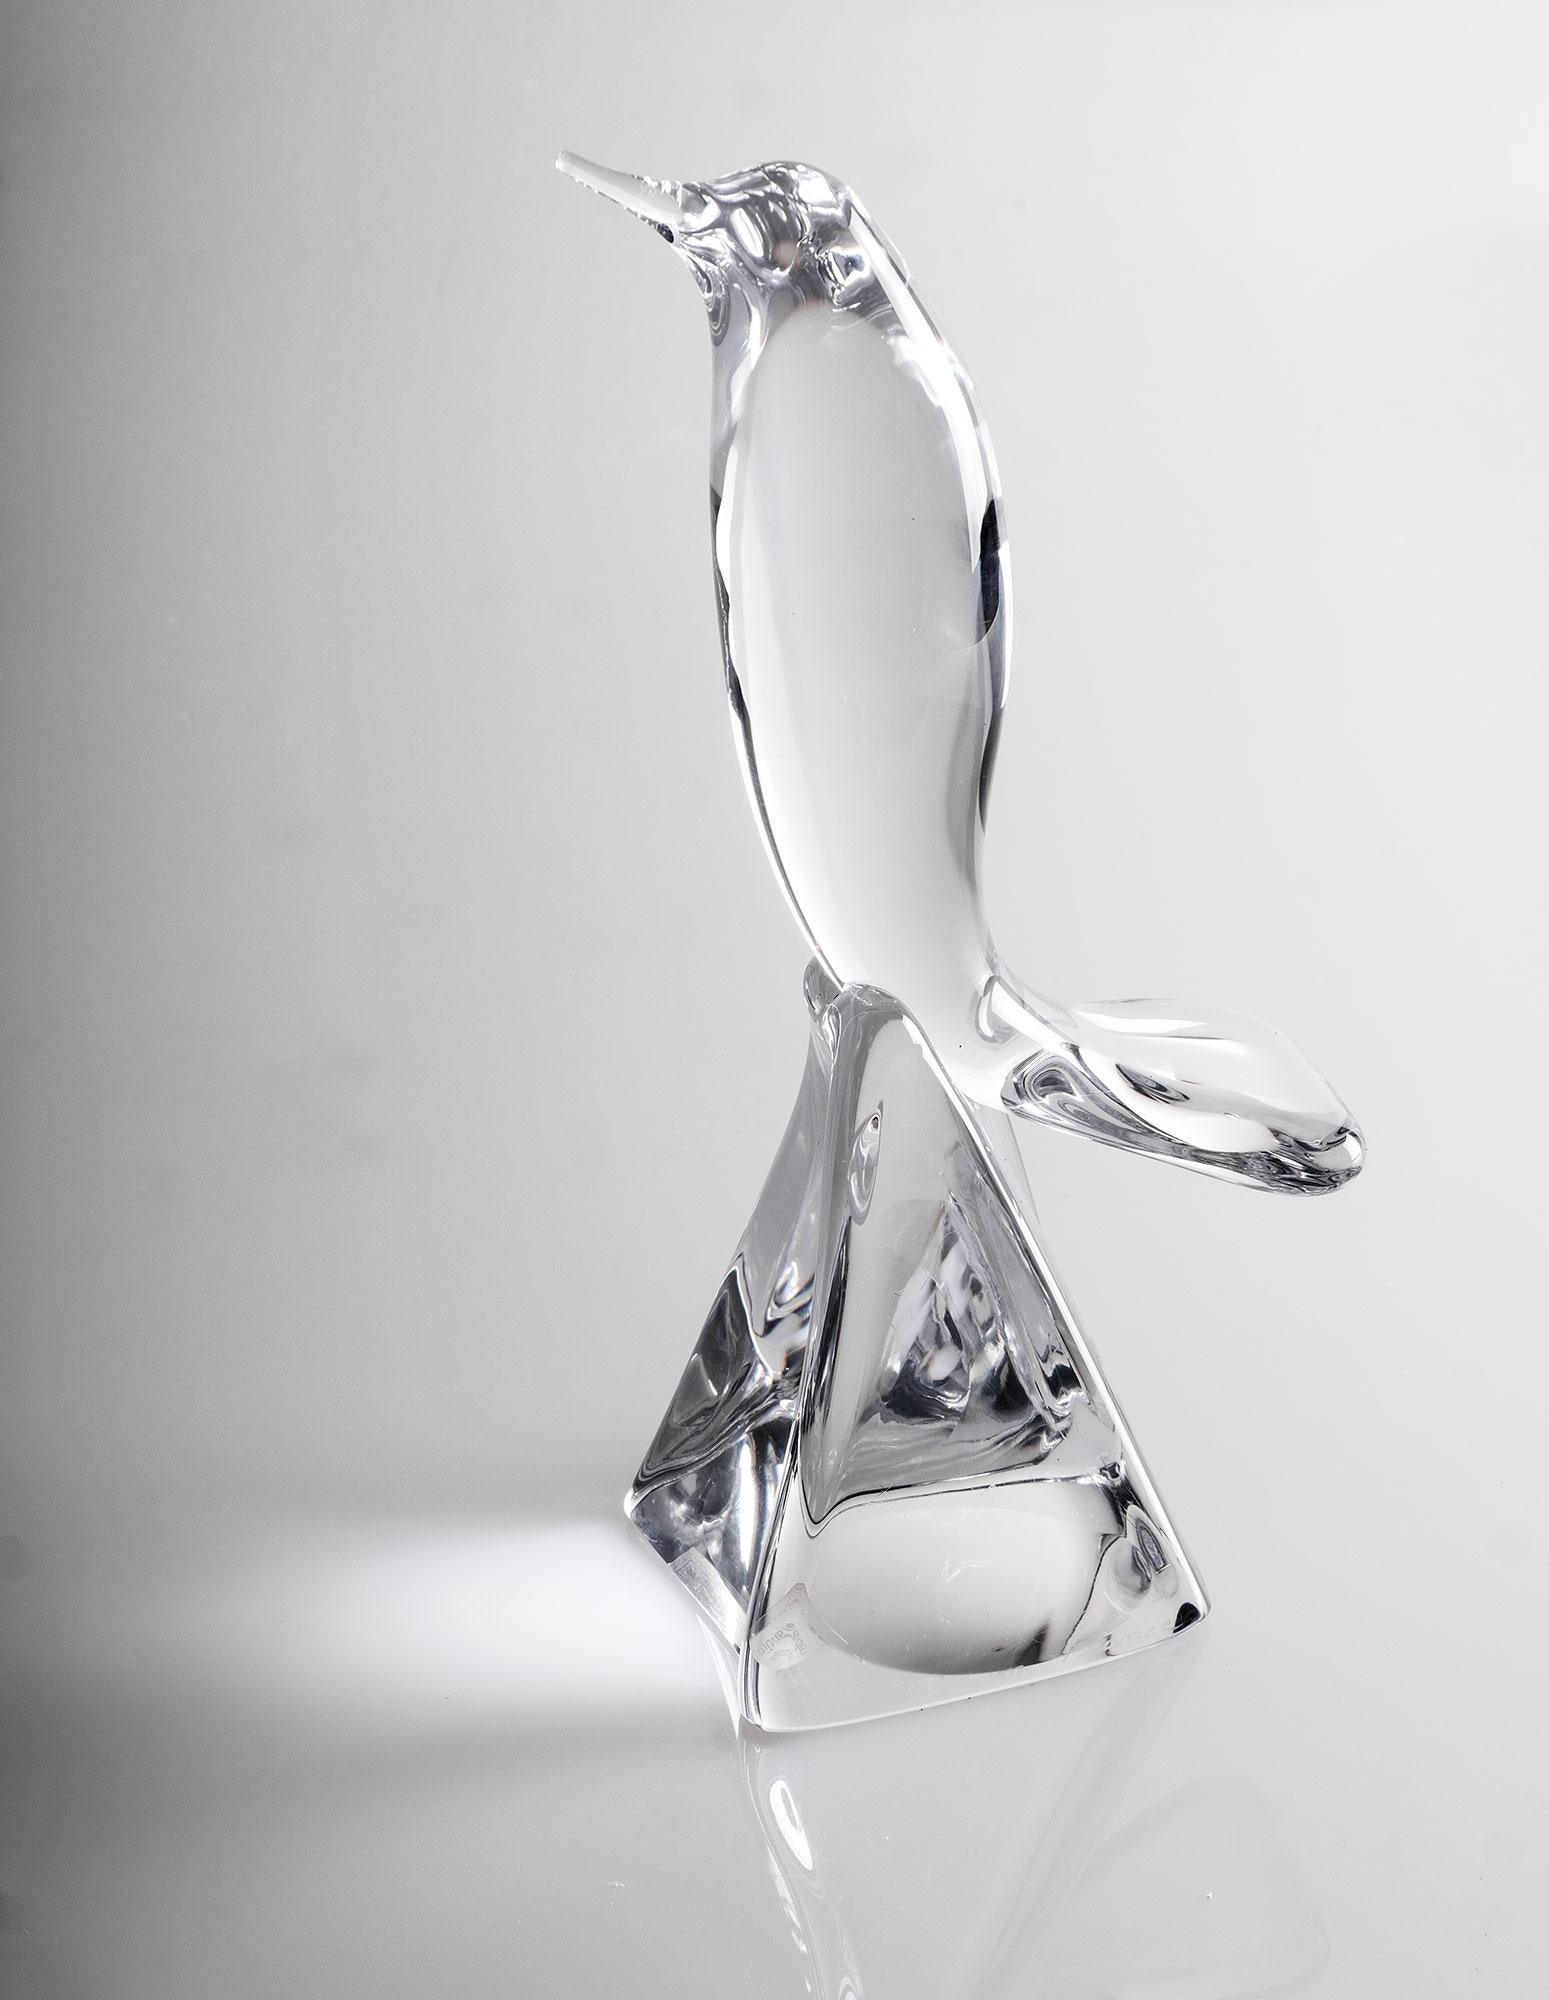 Stunning glass sculpture of a bird by Daum France. 
Signed Daum France.